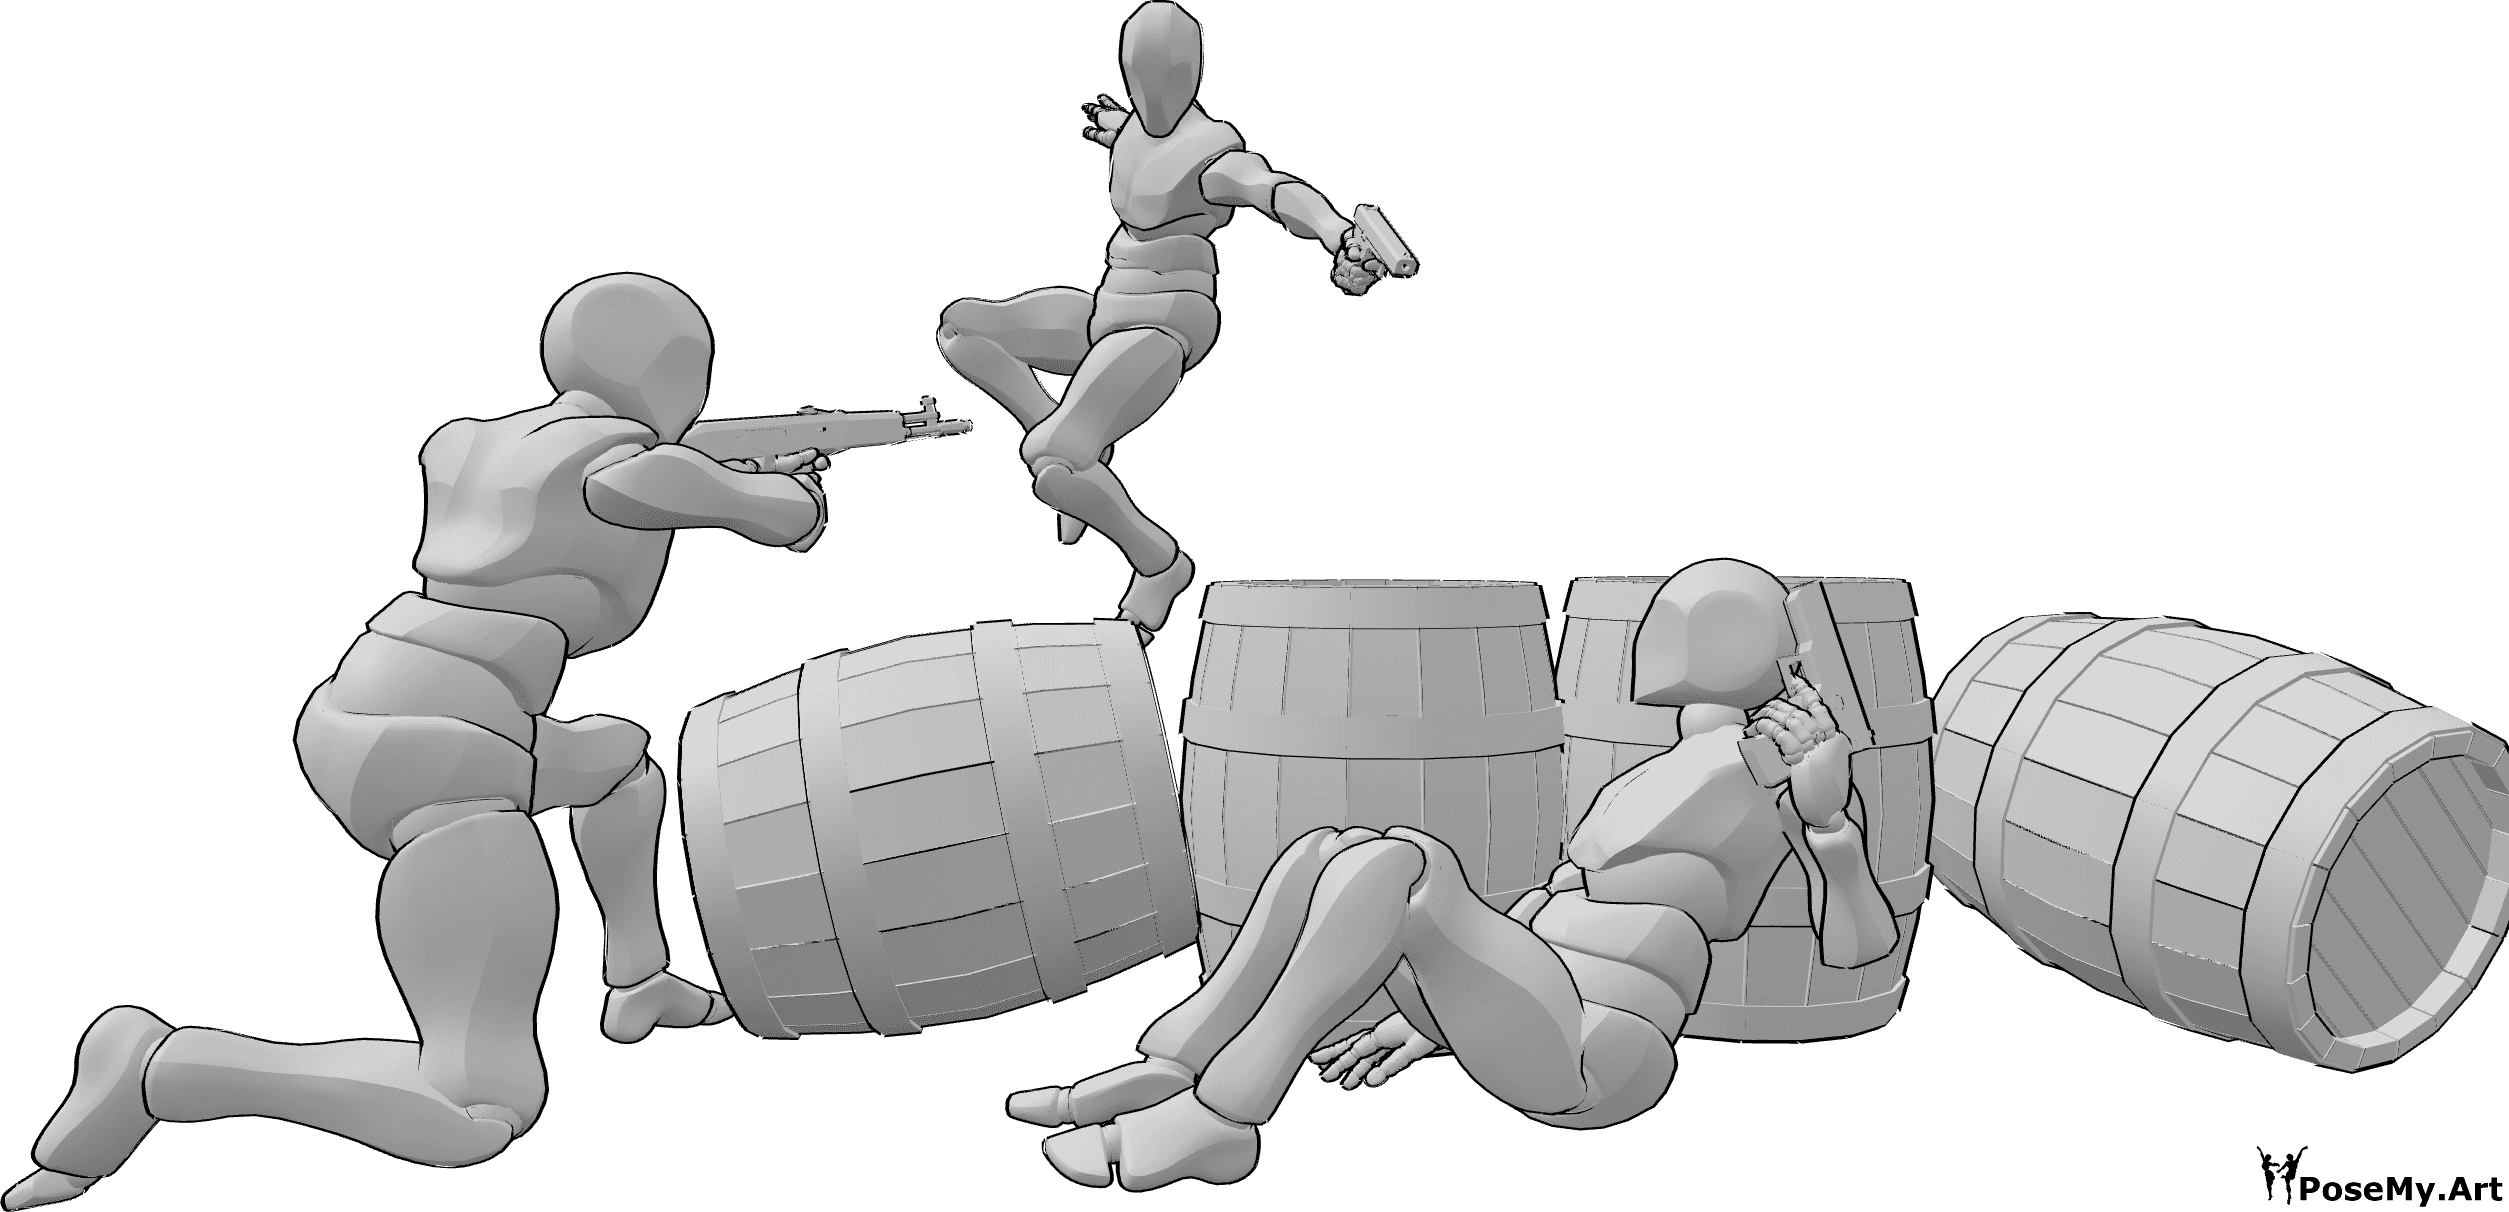 Referência de poses- Pose da capa dos barris de batalha - Três homens armados numa batalha, abrigando-se atrás de barris em pose